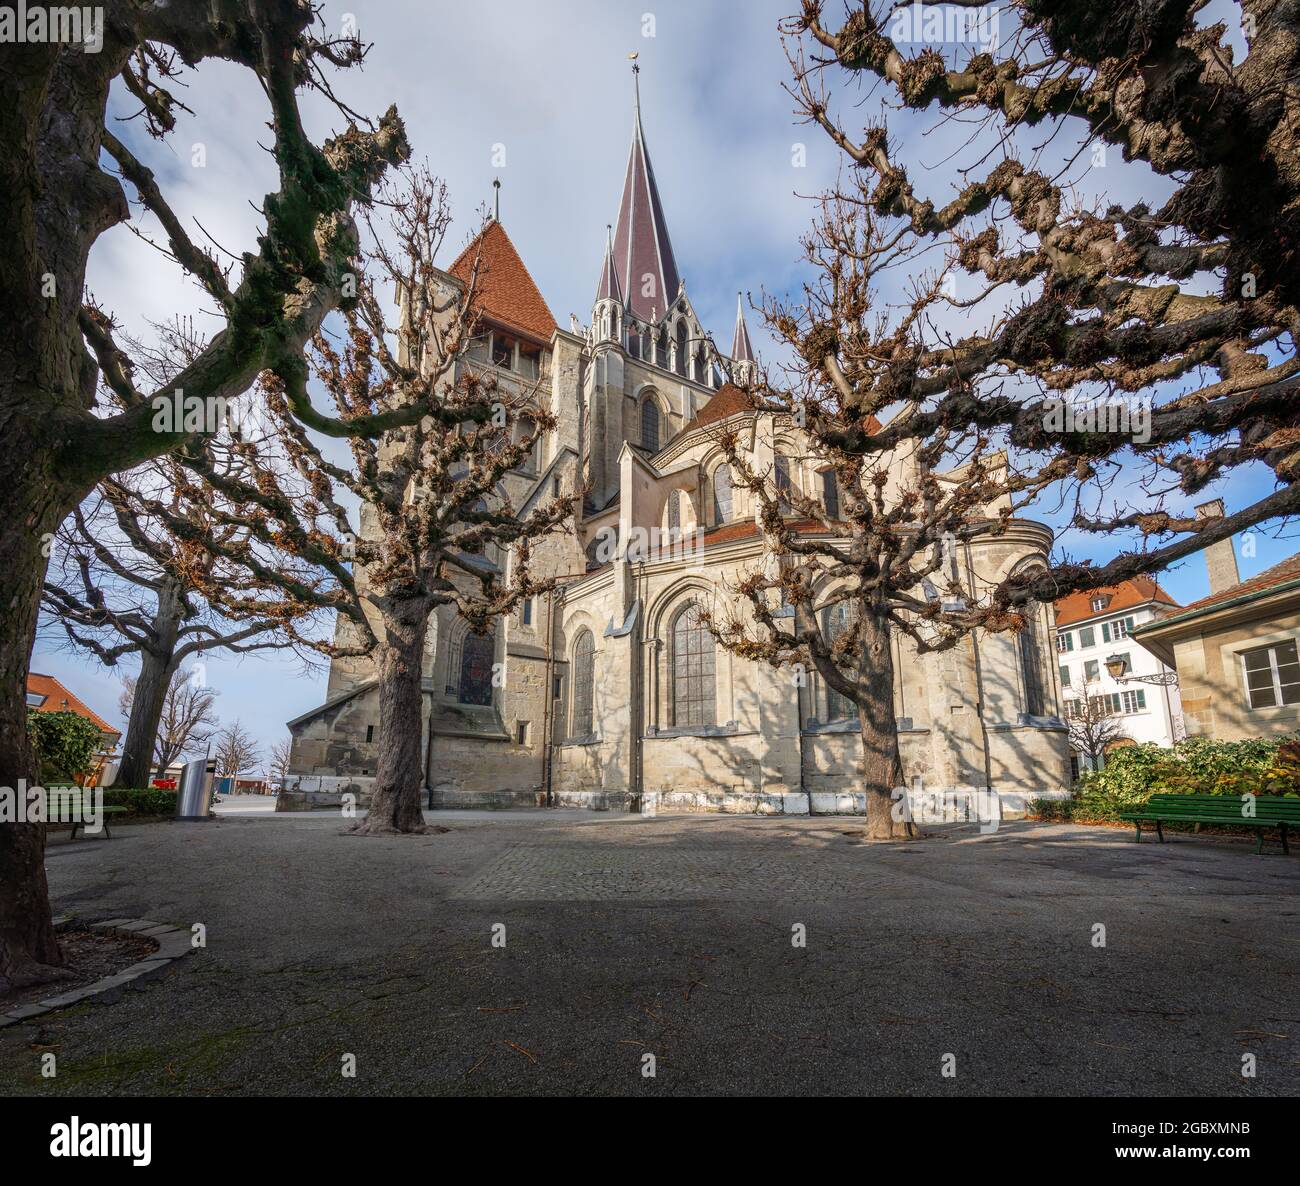 Cathédrale de Lausanne - Lausanne, Suisse Banque D'Images